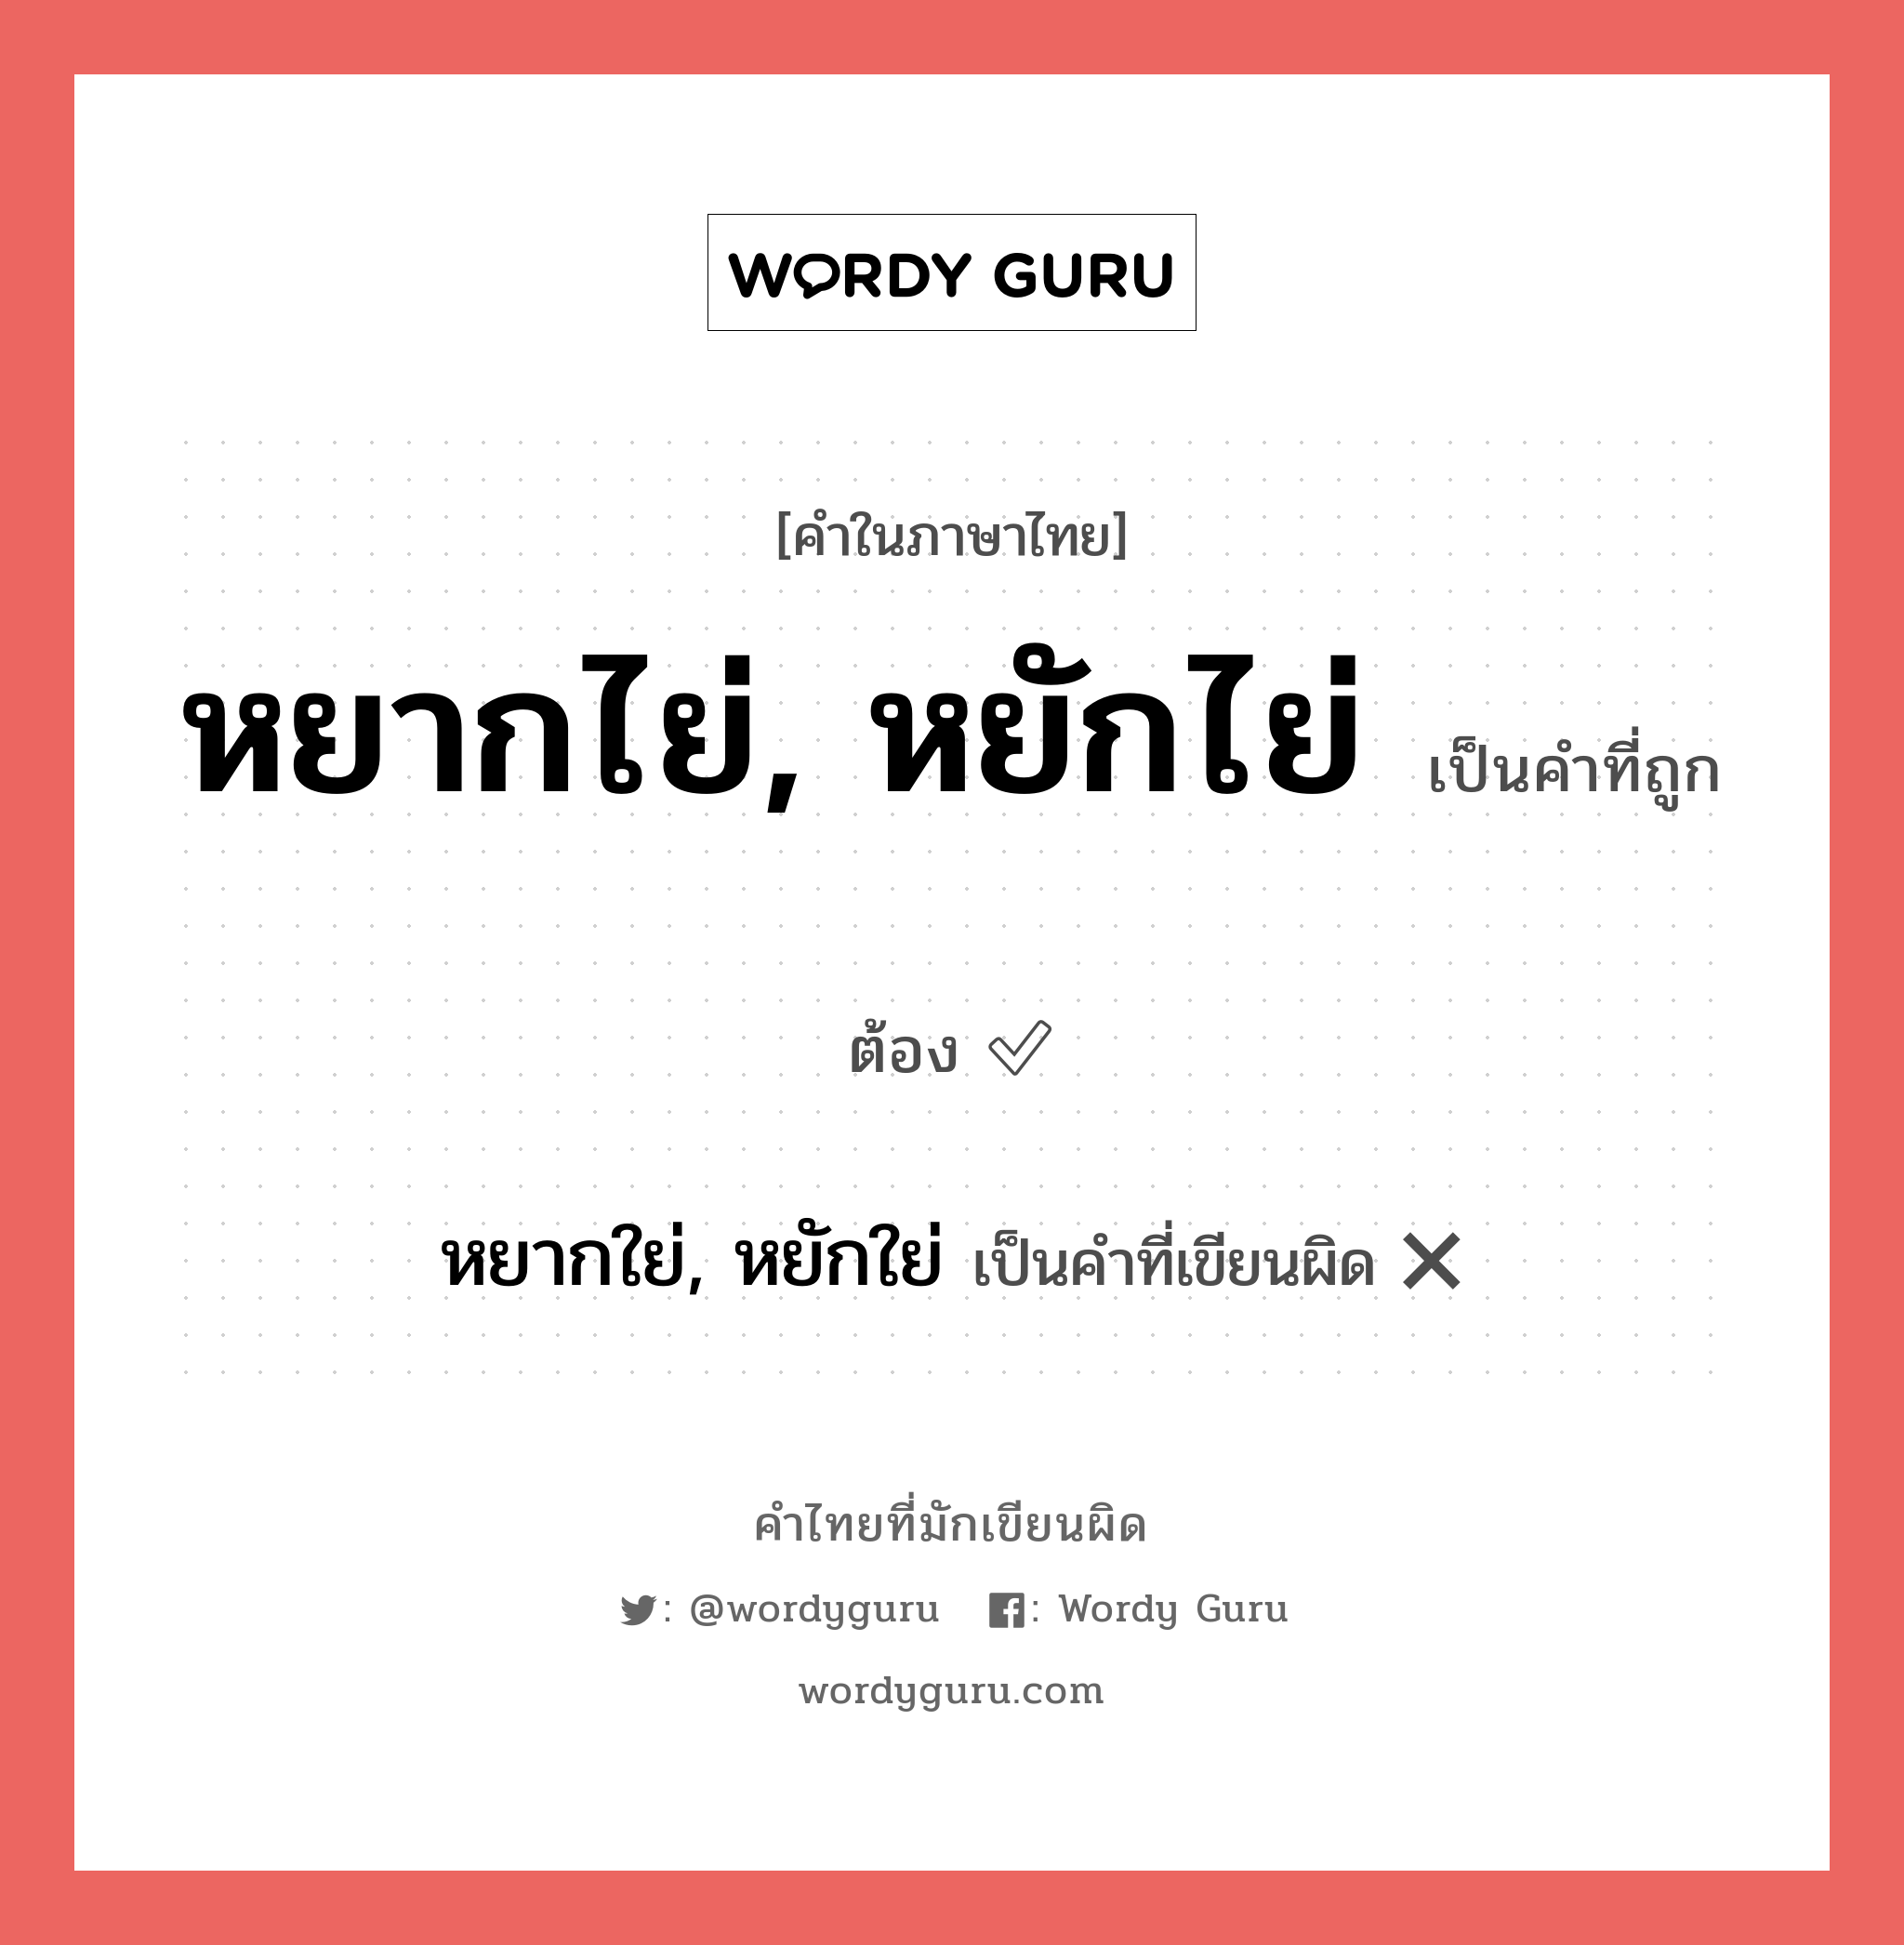 หยากใย่, หยักใย่ หรือ หยากไย่, หยักไย่ คำไหนเขียนถูก?, คำในภาษาไทยที่มักเขียนผิด หยากใย่, หยักใย่ คำที่ผิด ❌ หยากไย่, หยักไย่